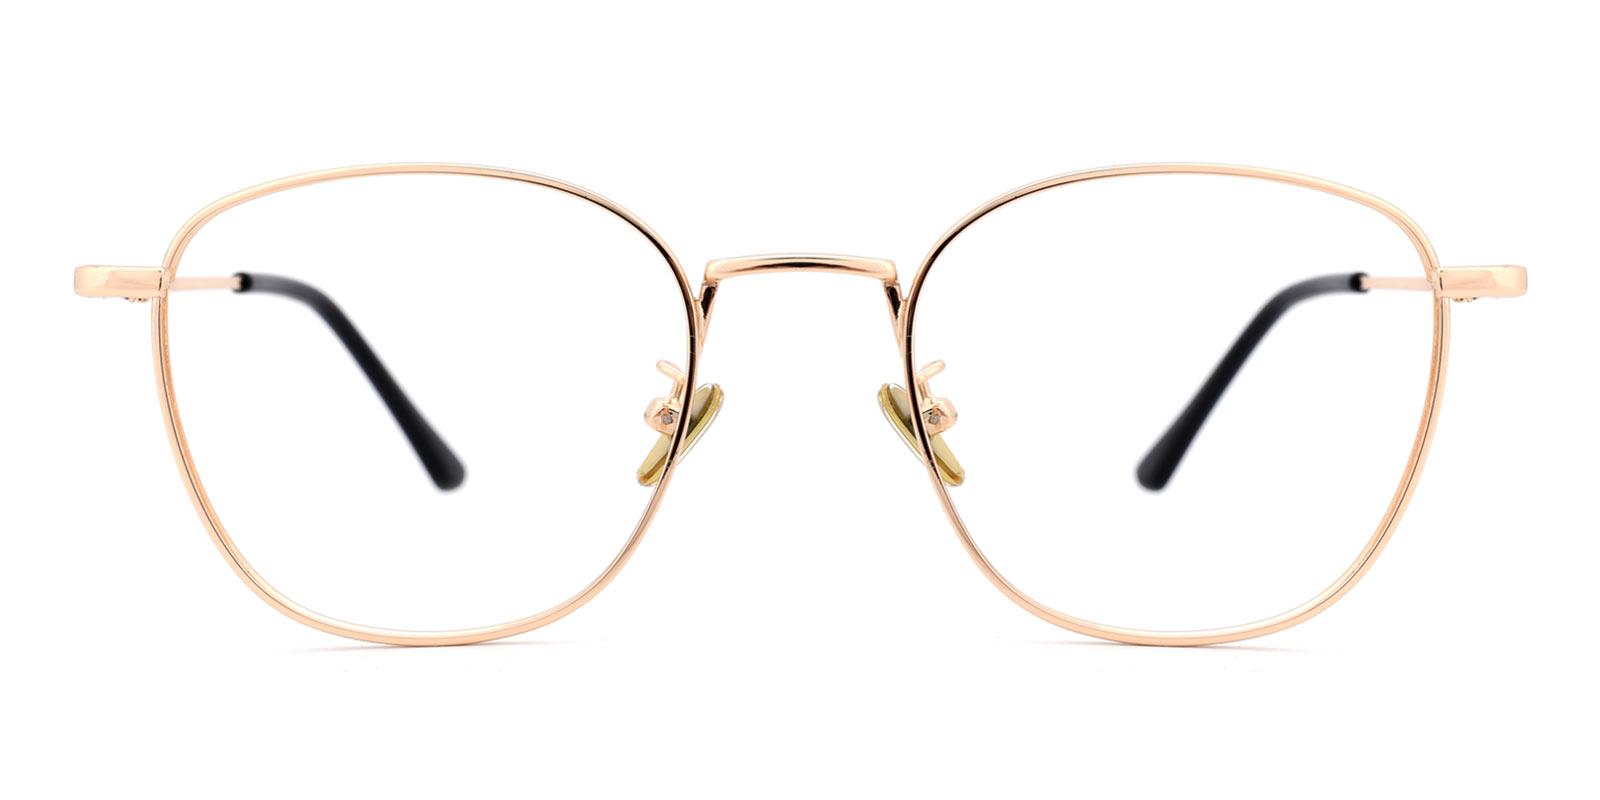 Richard-Gold-Square-Metal-Eyeglasses-detail